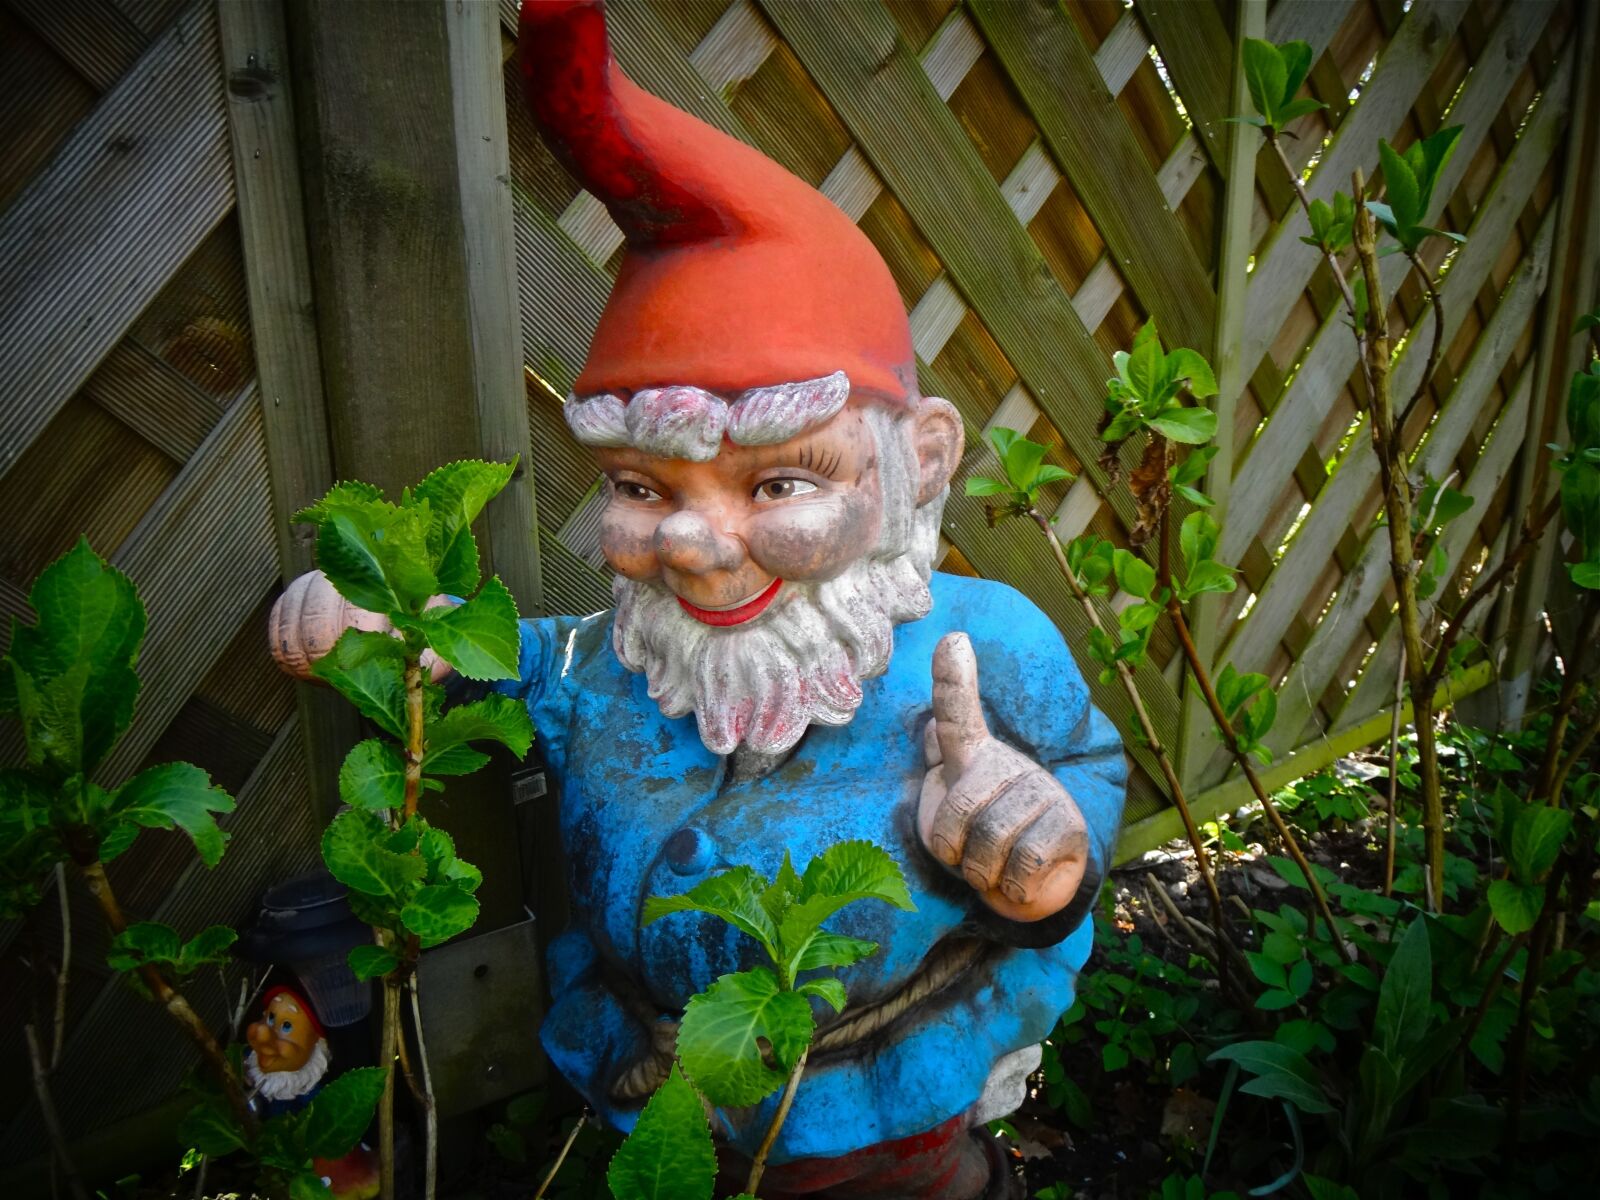 Sony DSC-TX55 sample photo. Garden gnome, garden, imp photography